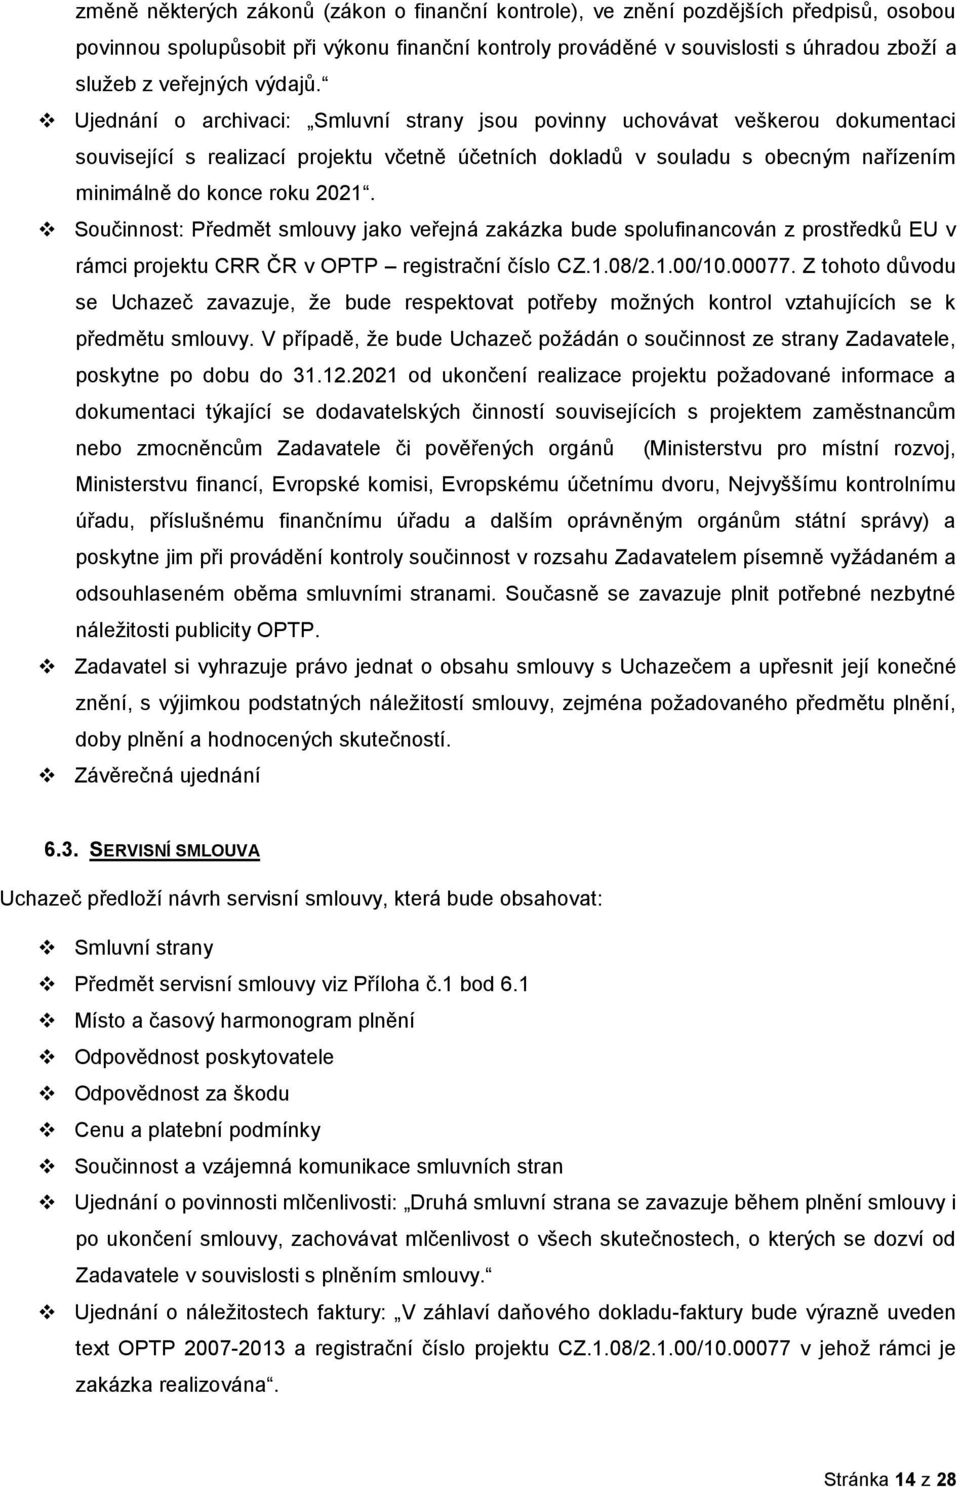 Sučinnst: Předmět smluvy jak veřejná zakázka bude splufinancván z prstředků EU v rámci prjektu CRR ČR v OPTP registrační čísl CZ.1.08/2.1.00/10.00077.